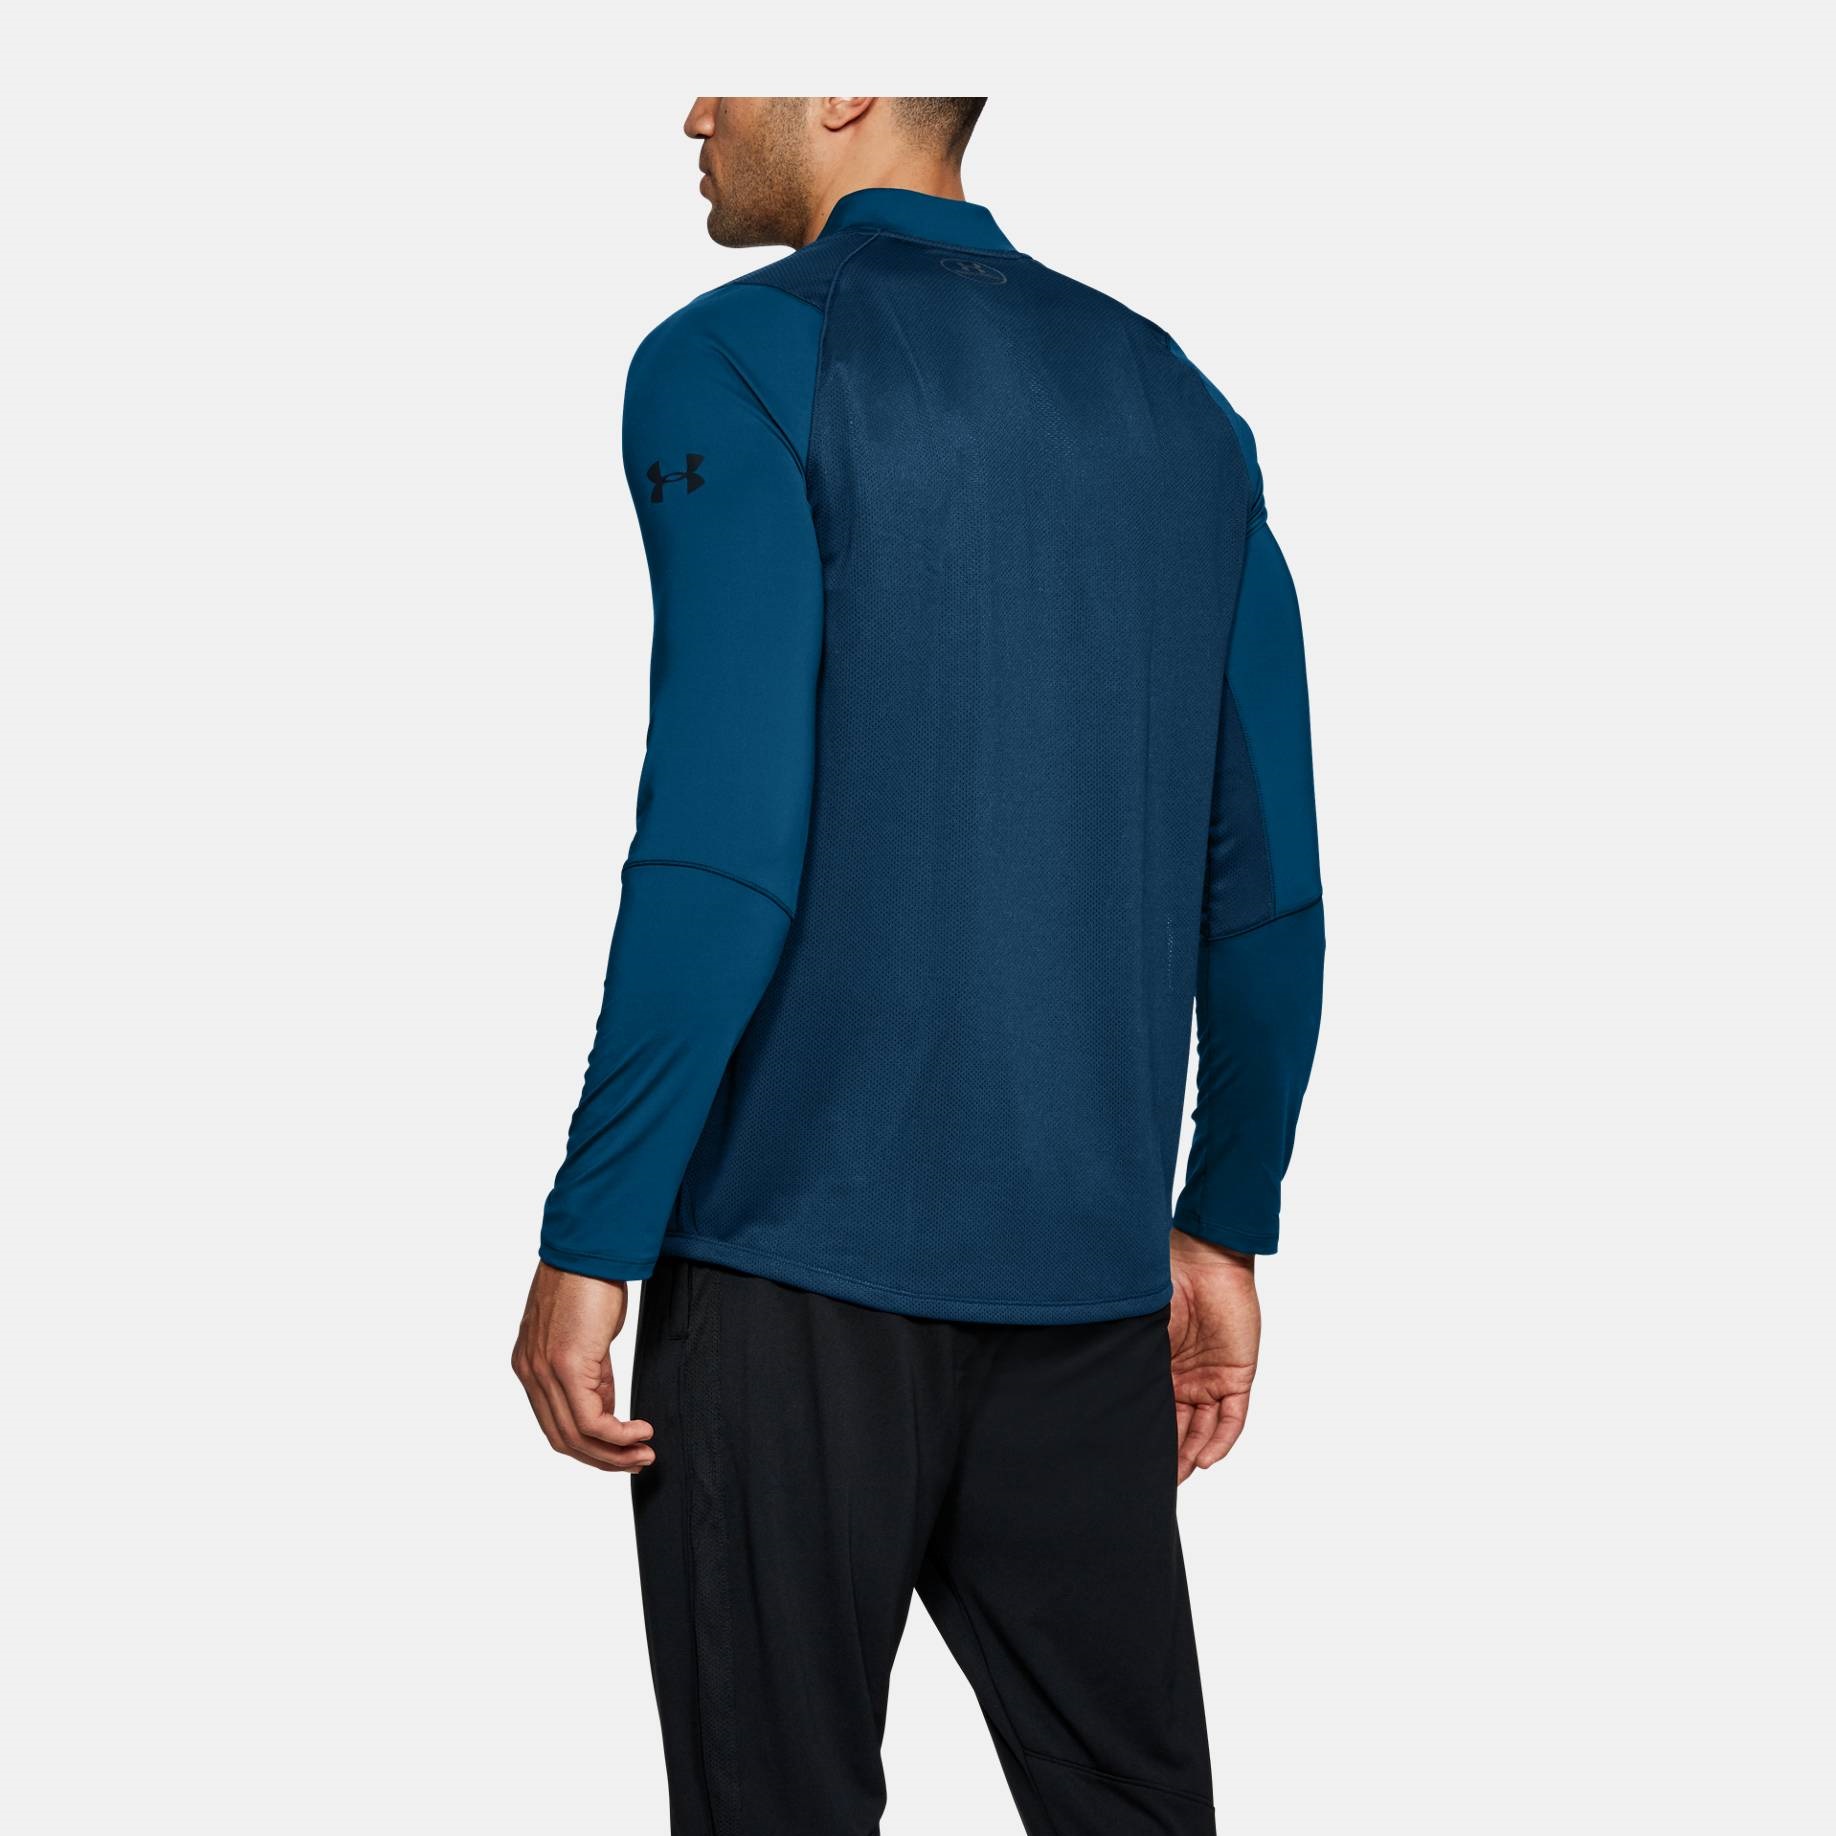 Sweatshirts -  under armour MK-1 1/4 Zip Shirt 6430